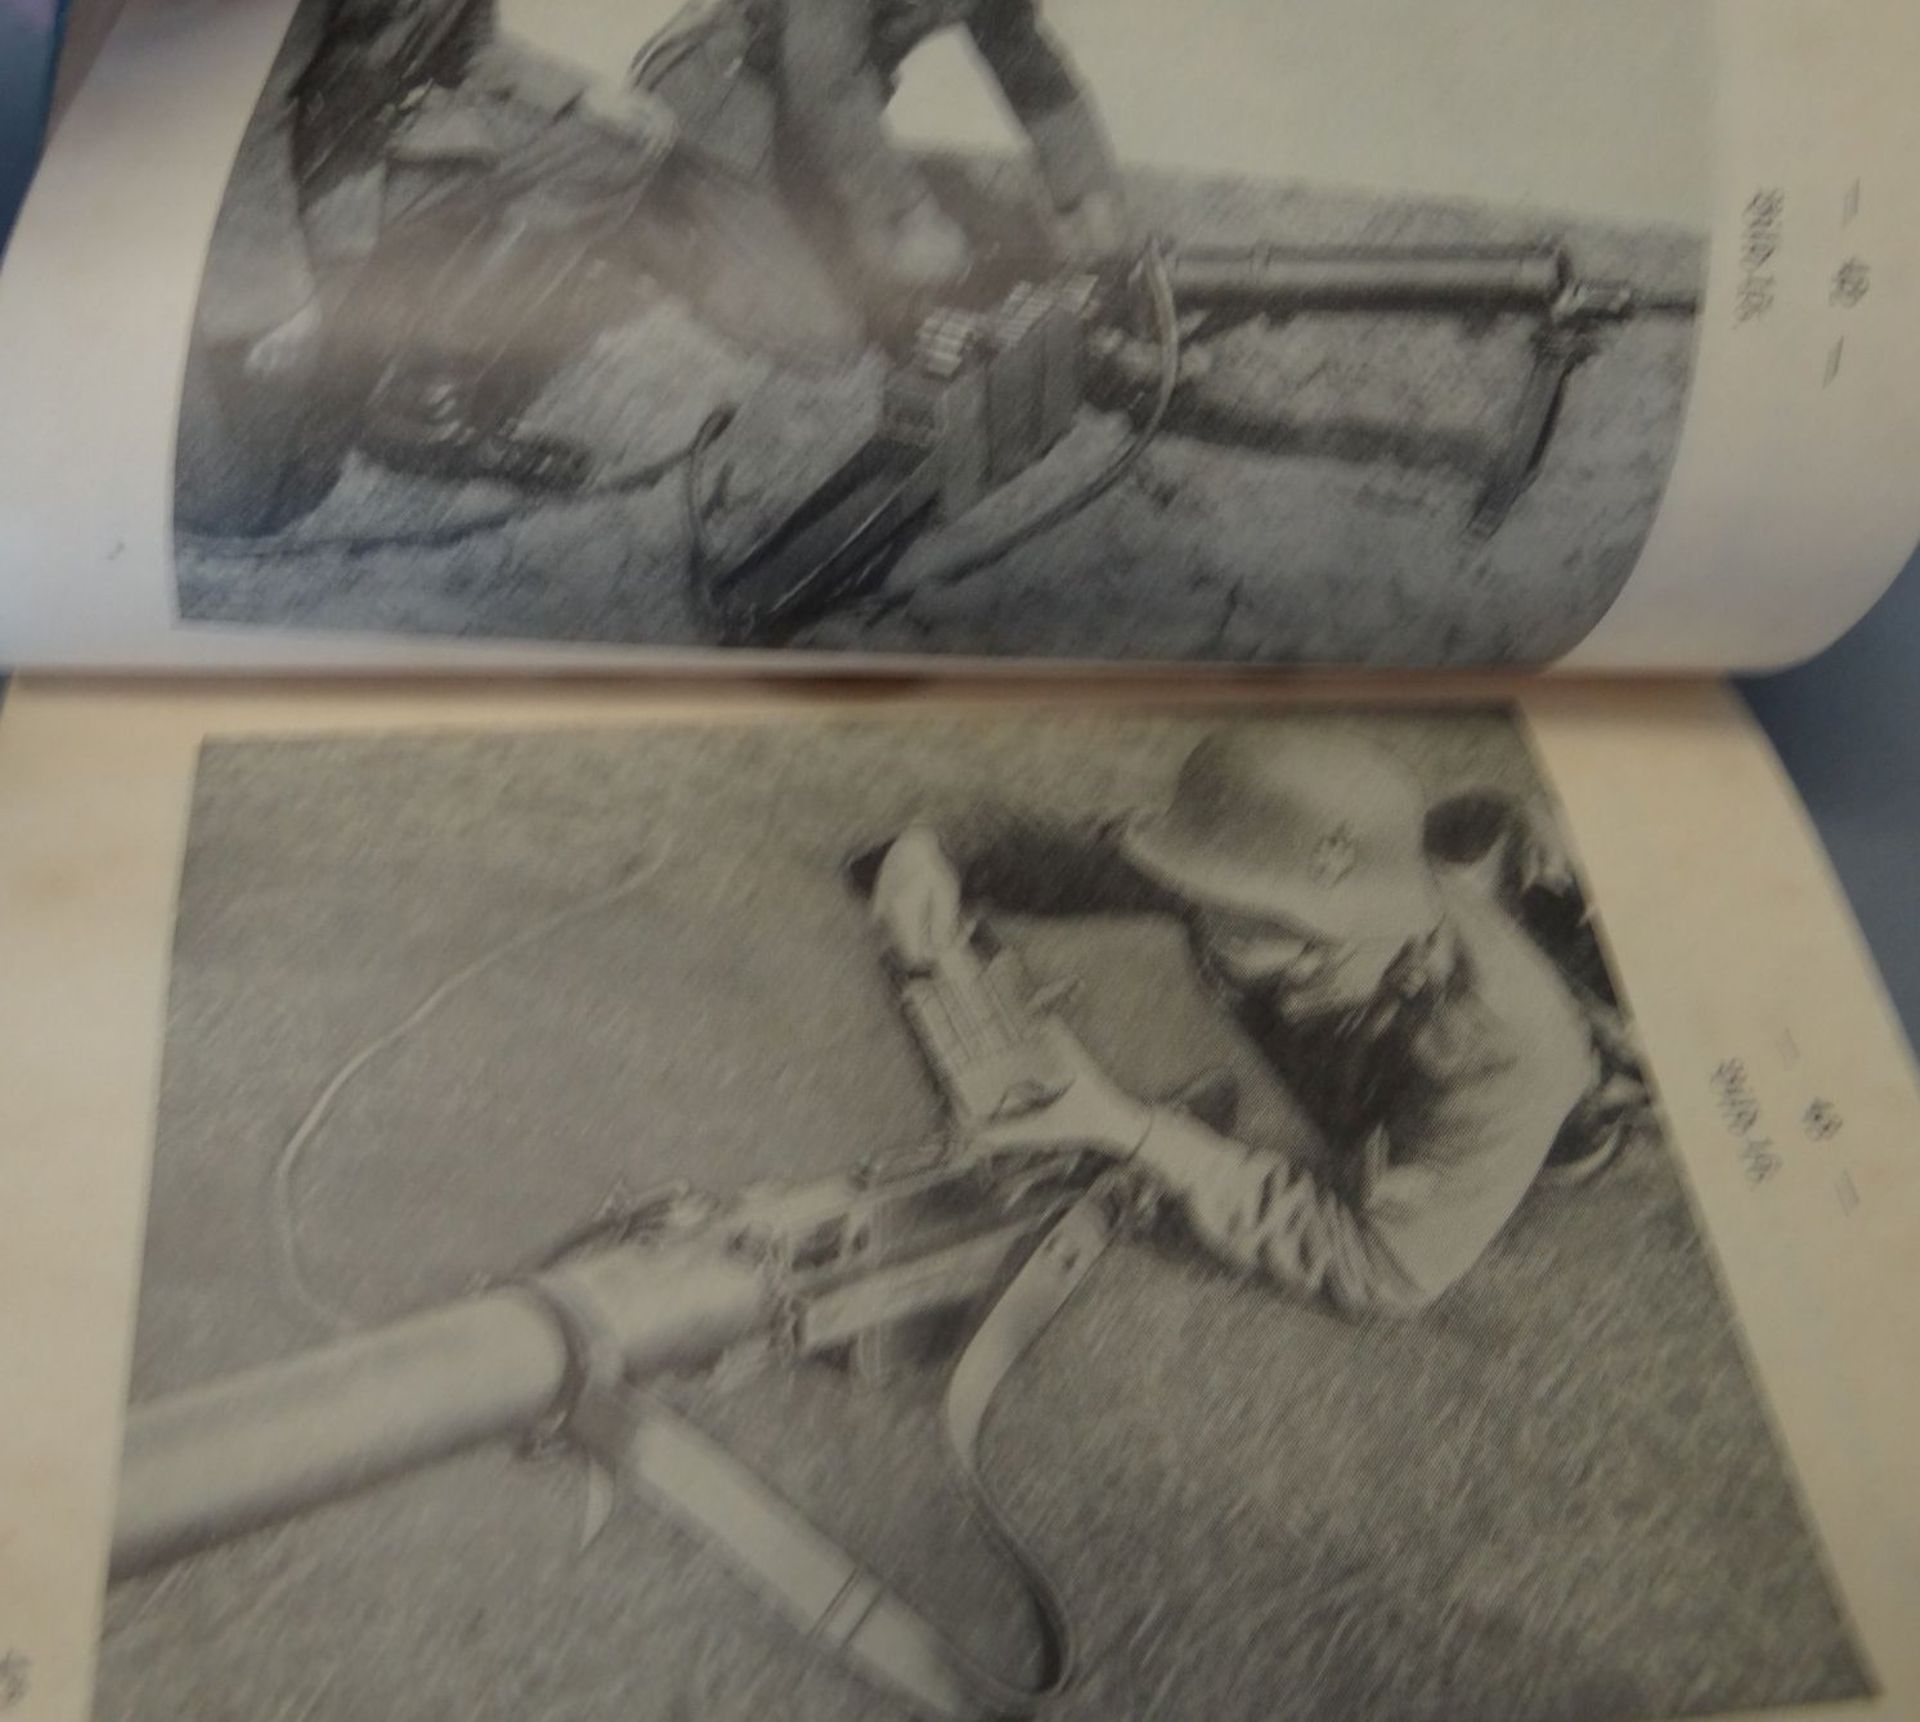 Büchlein, Ausbildung am Gewehr oder ähnliches?, Wehrmacht, Titelseite mit Titel etc. fehlt, 15x10 - Bild 6 aus 8